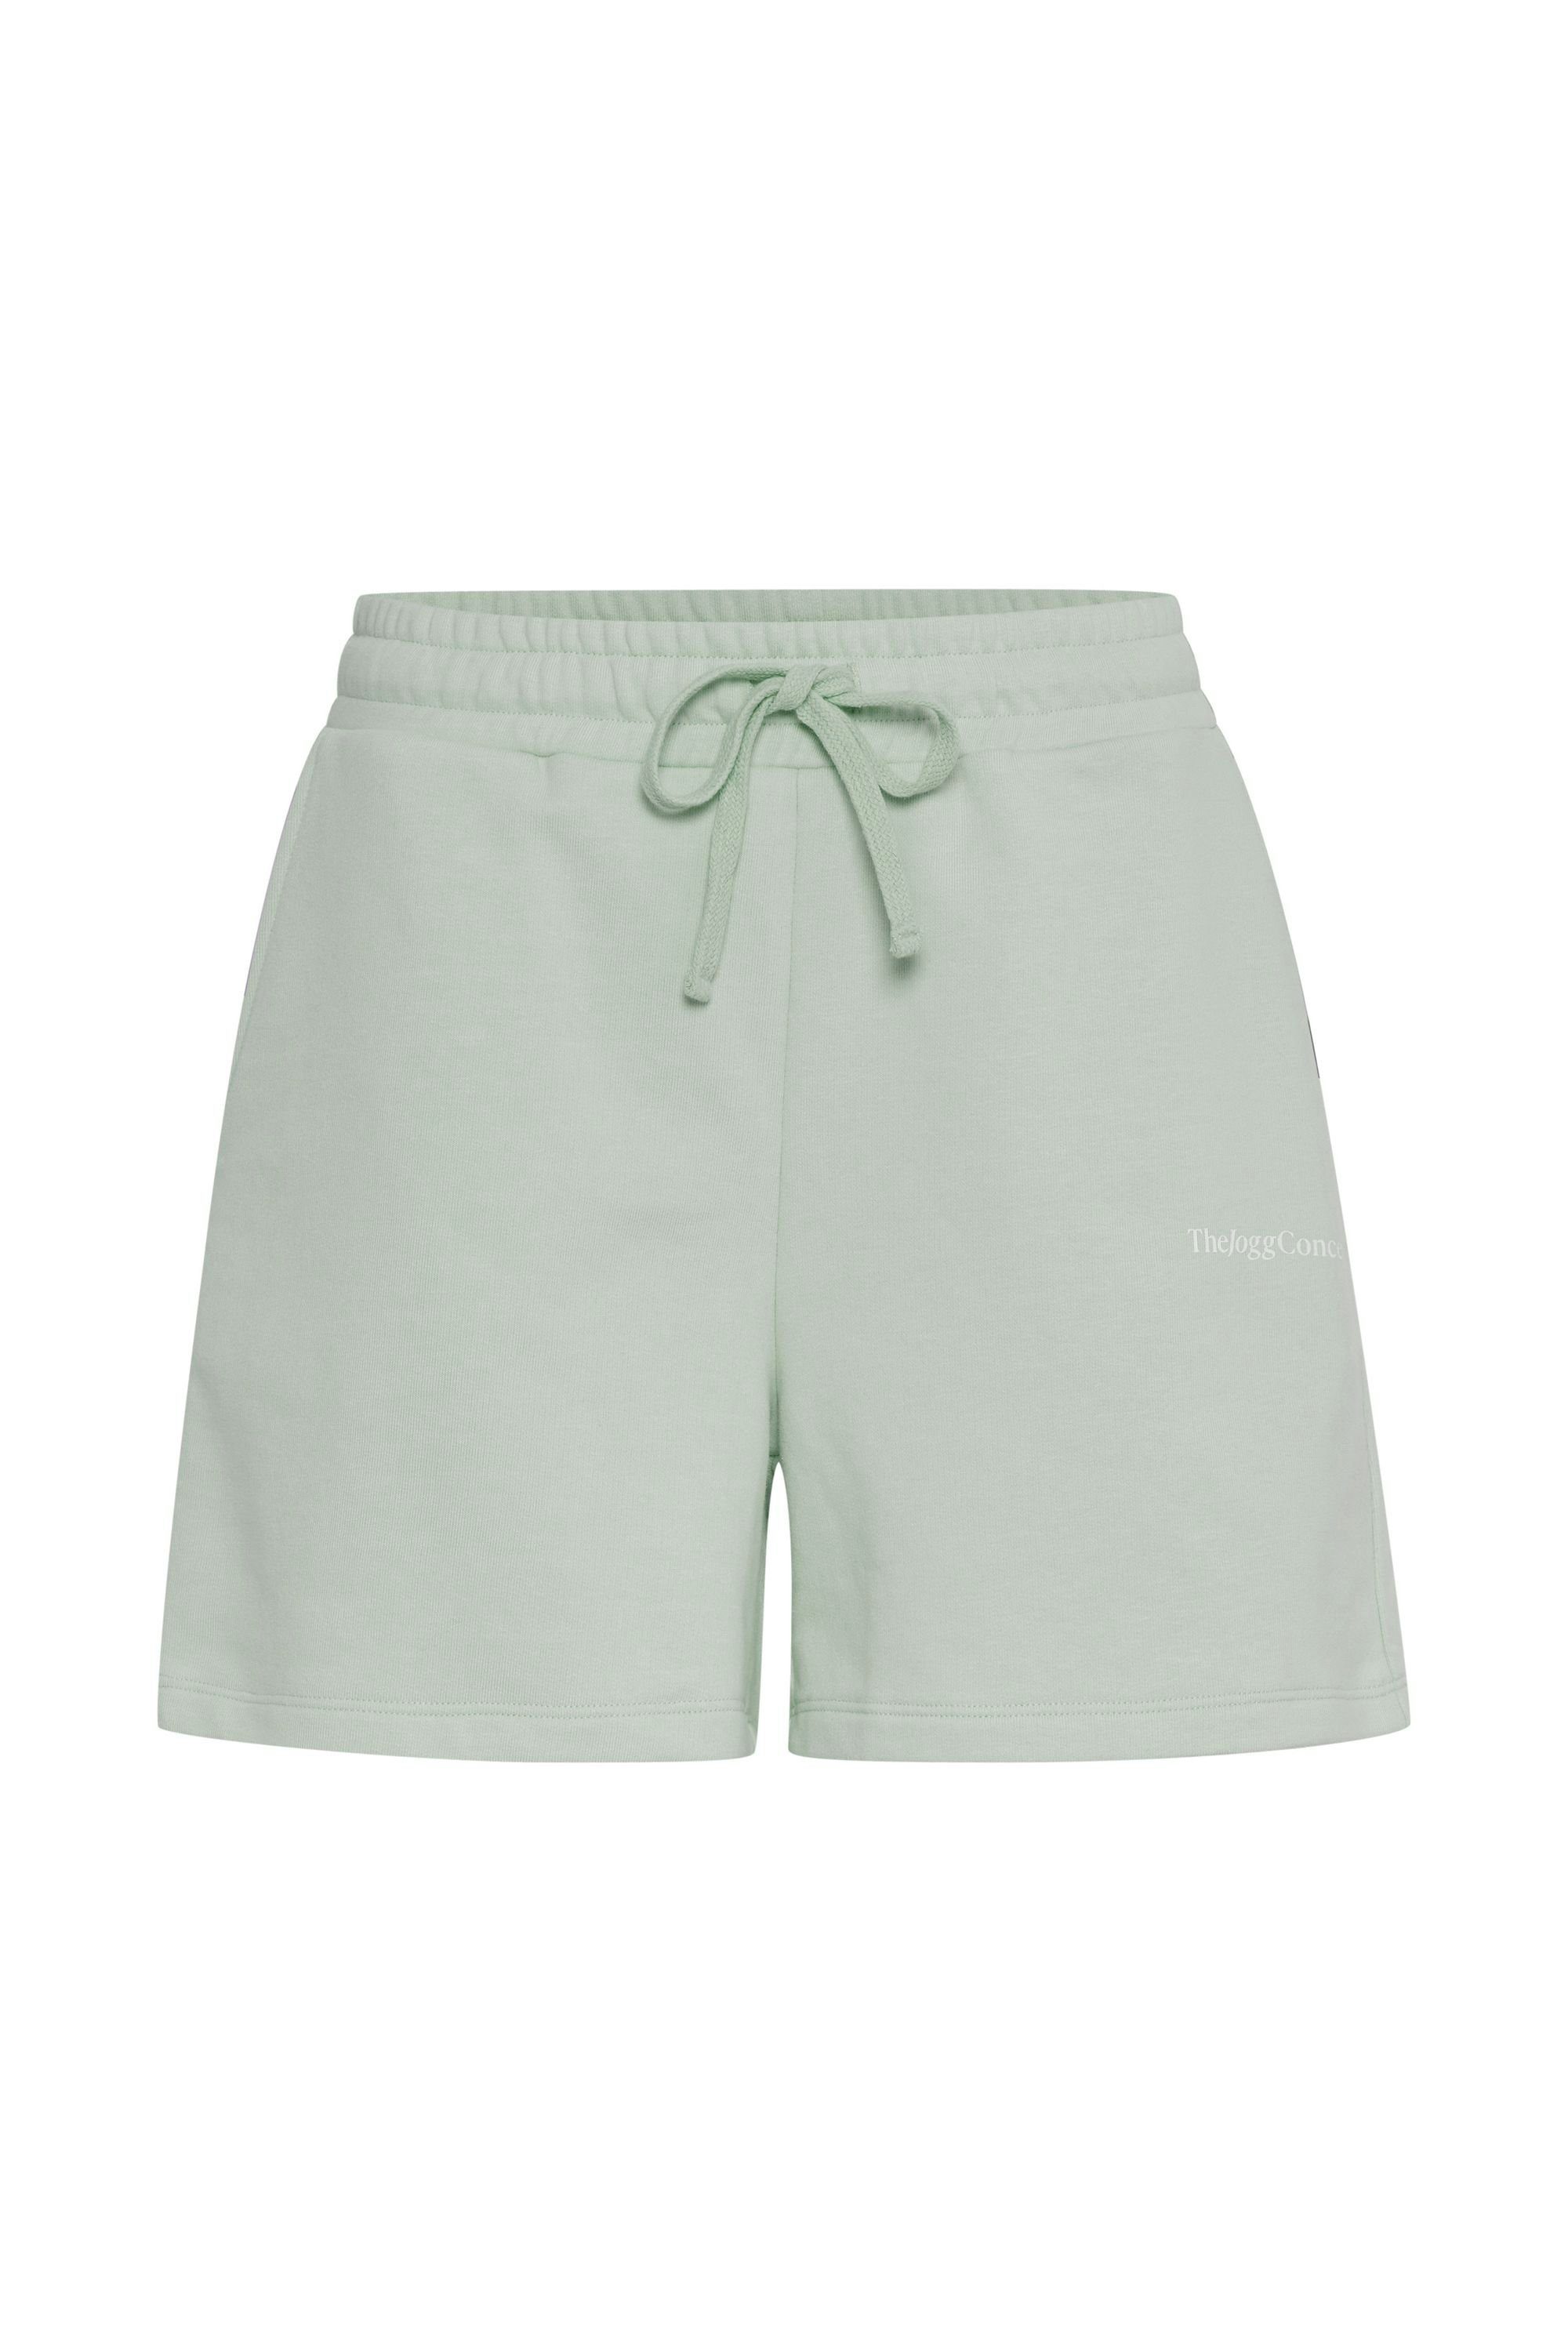 (155706) TheJoggConcept. Sweatshorts bequeme lässige 22800019 SHORTS Frosty JCSAFINE Green Shorts - und